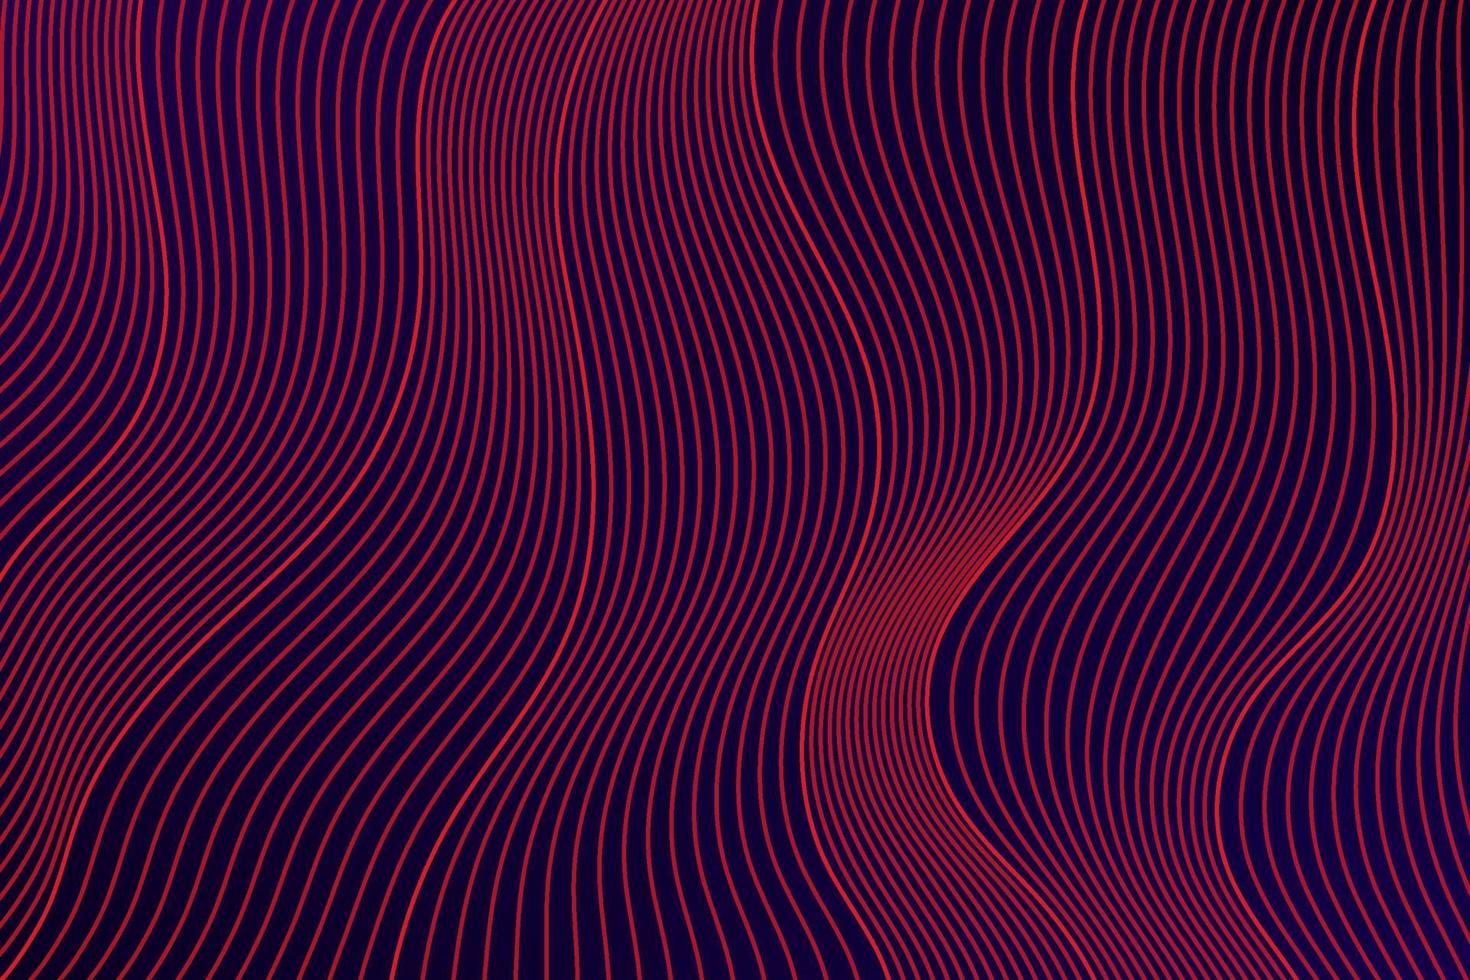 röd, rosa färg vågiga linjer struktur på mörk bakgrund. modern kurvmönster lager design. abstrakt bakgrundsdesign. eps10 vektor